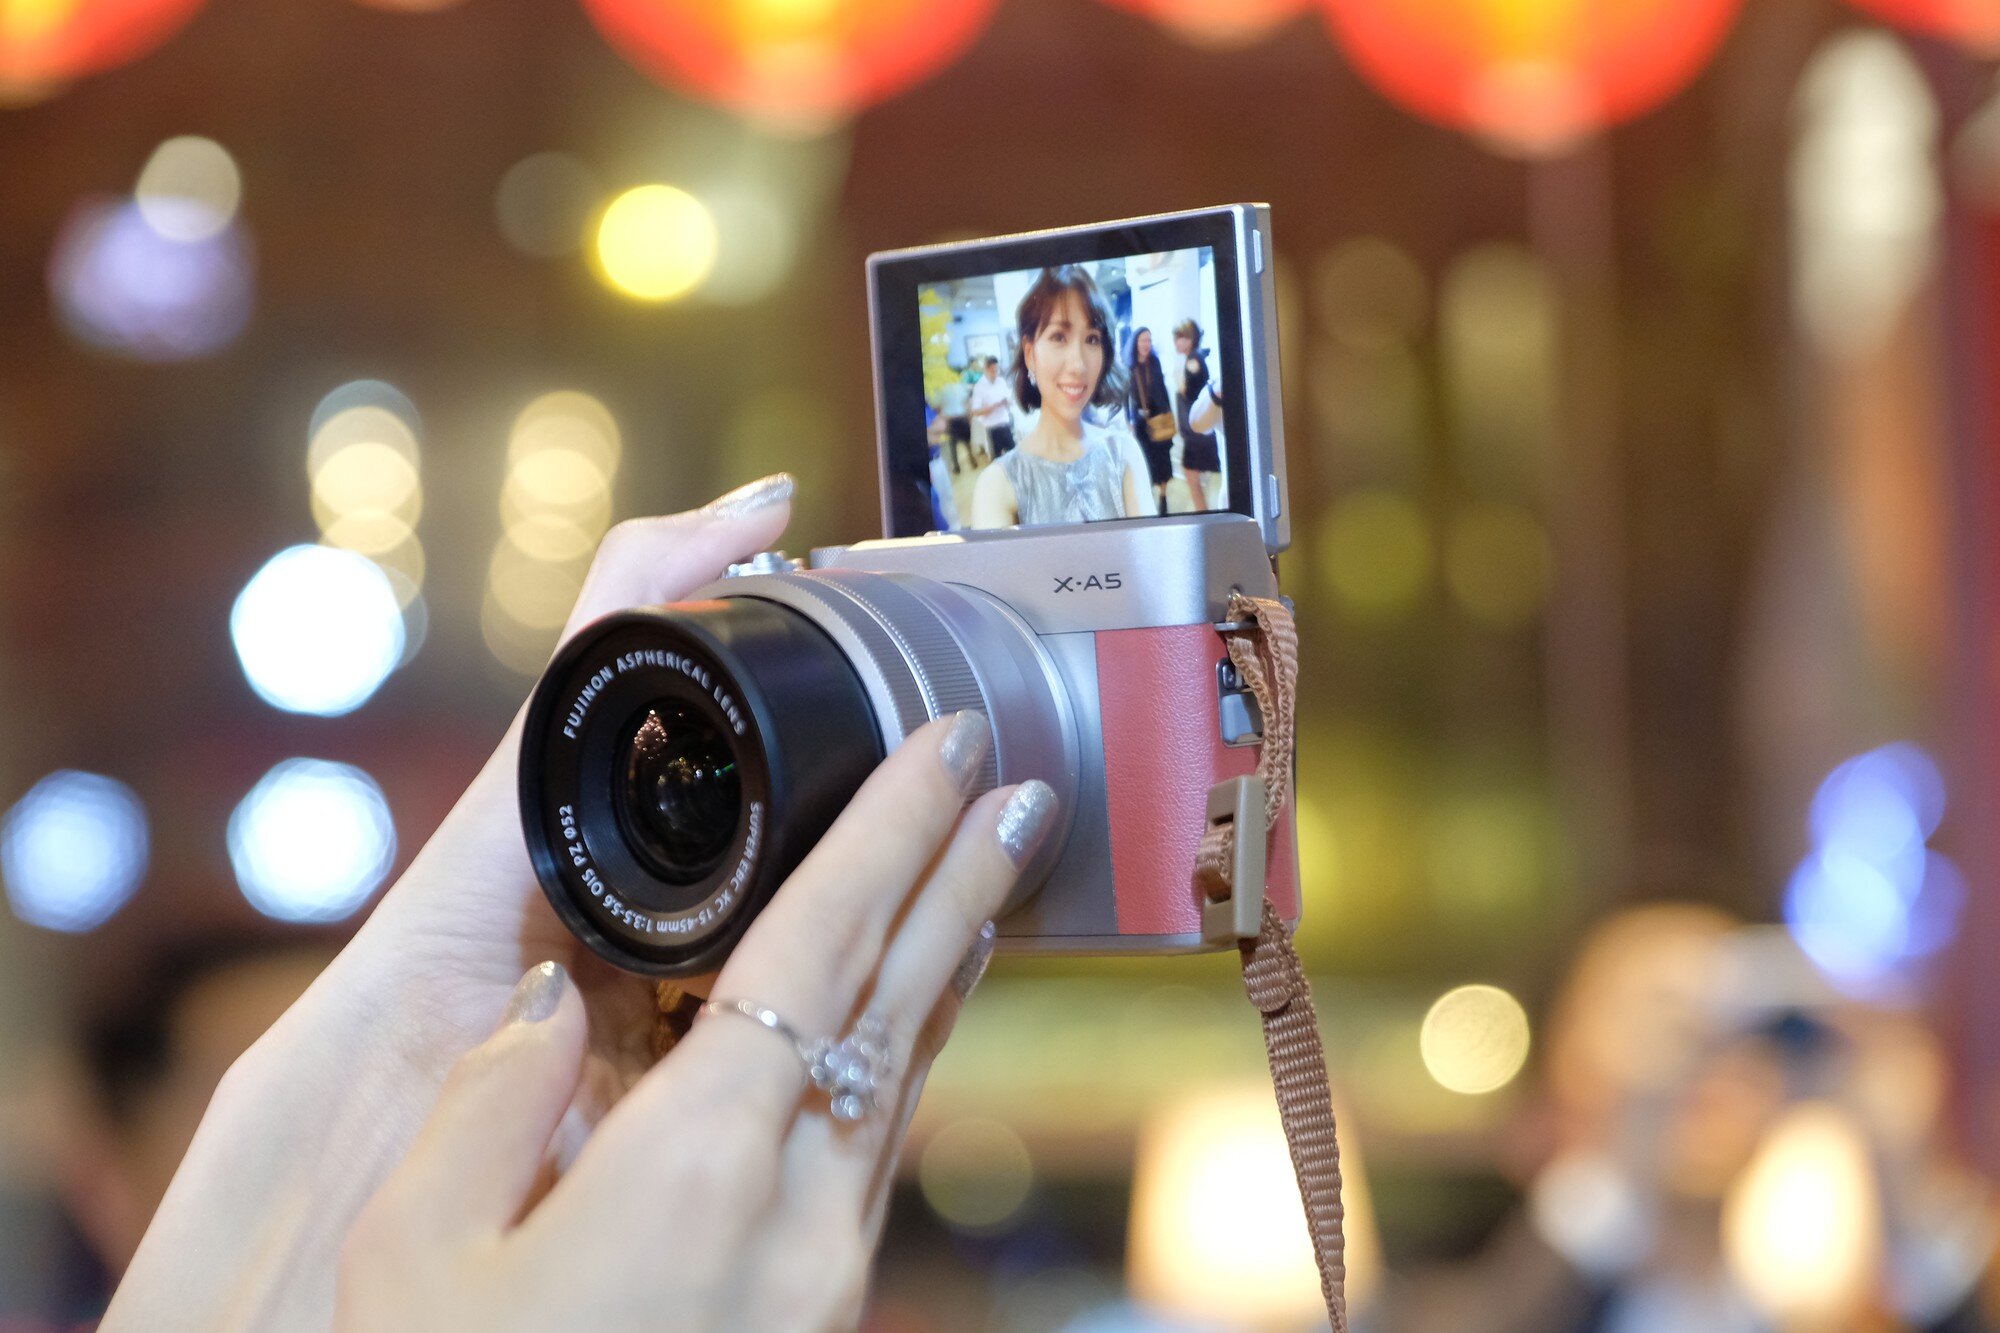 Máy ảnh Fujifilm gọn nhẹ dễ dàng đem theo bất cứ đâu, đưa lên selfie thoải mái